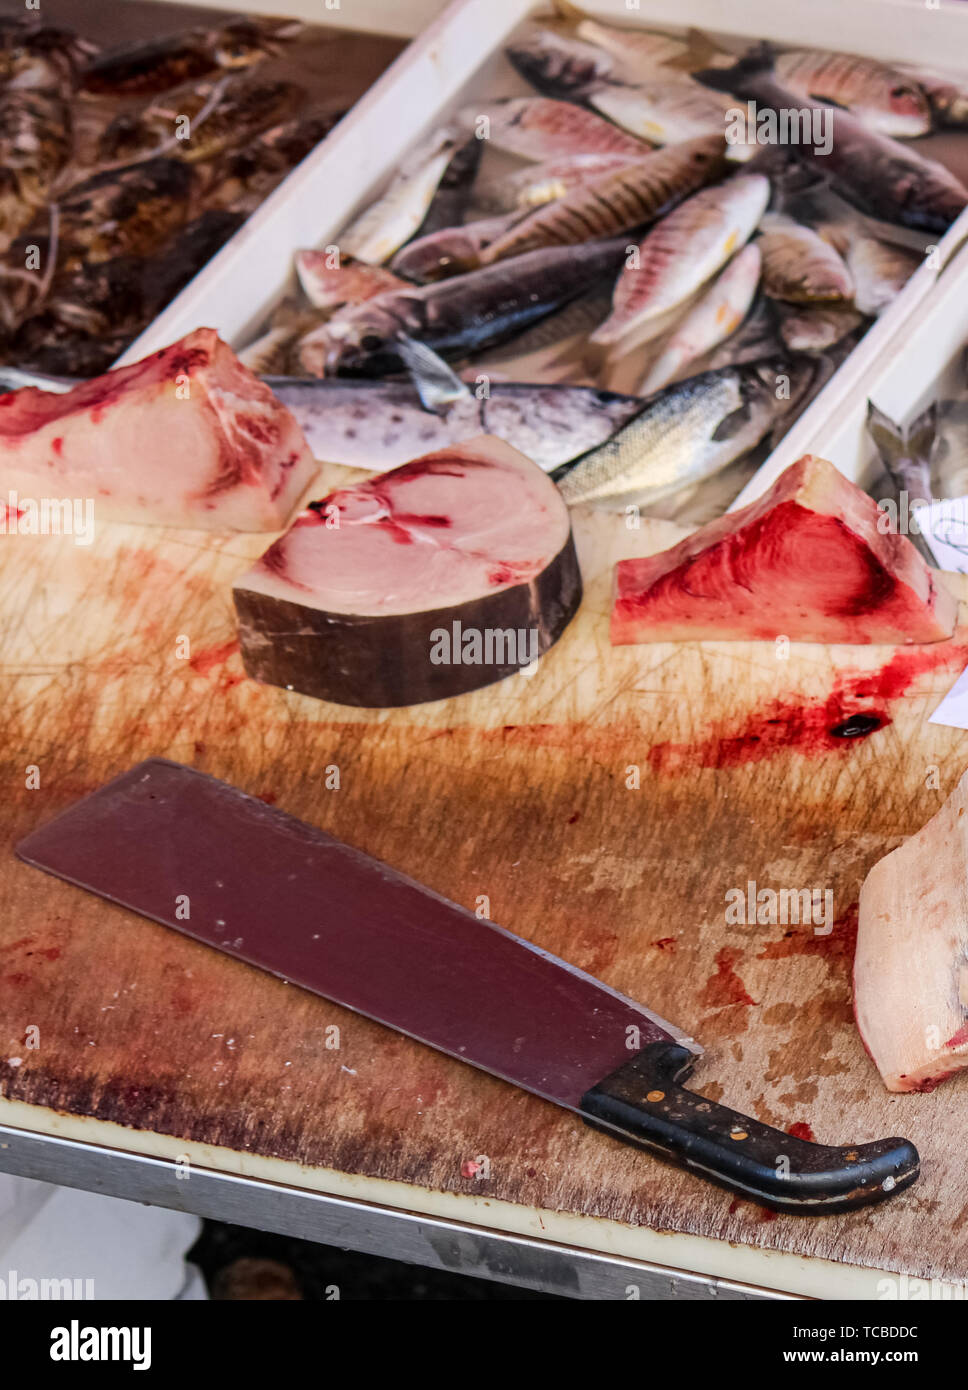 Chiudere la fotografia di fettine di pesce morto su un tavolo di legno con sangue e big cleaver. Animale il concetto di abuso, crudeltà nei confronti degli animali. Conservazione delle specie minacciate di estinzione. Problema globale. Foto: Catania, IT. Foto Stock